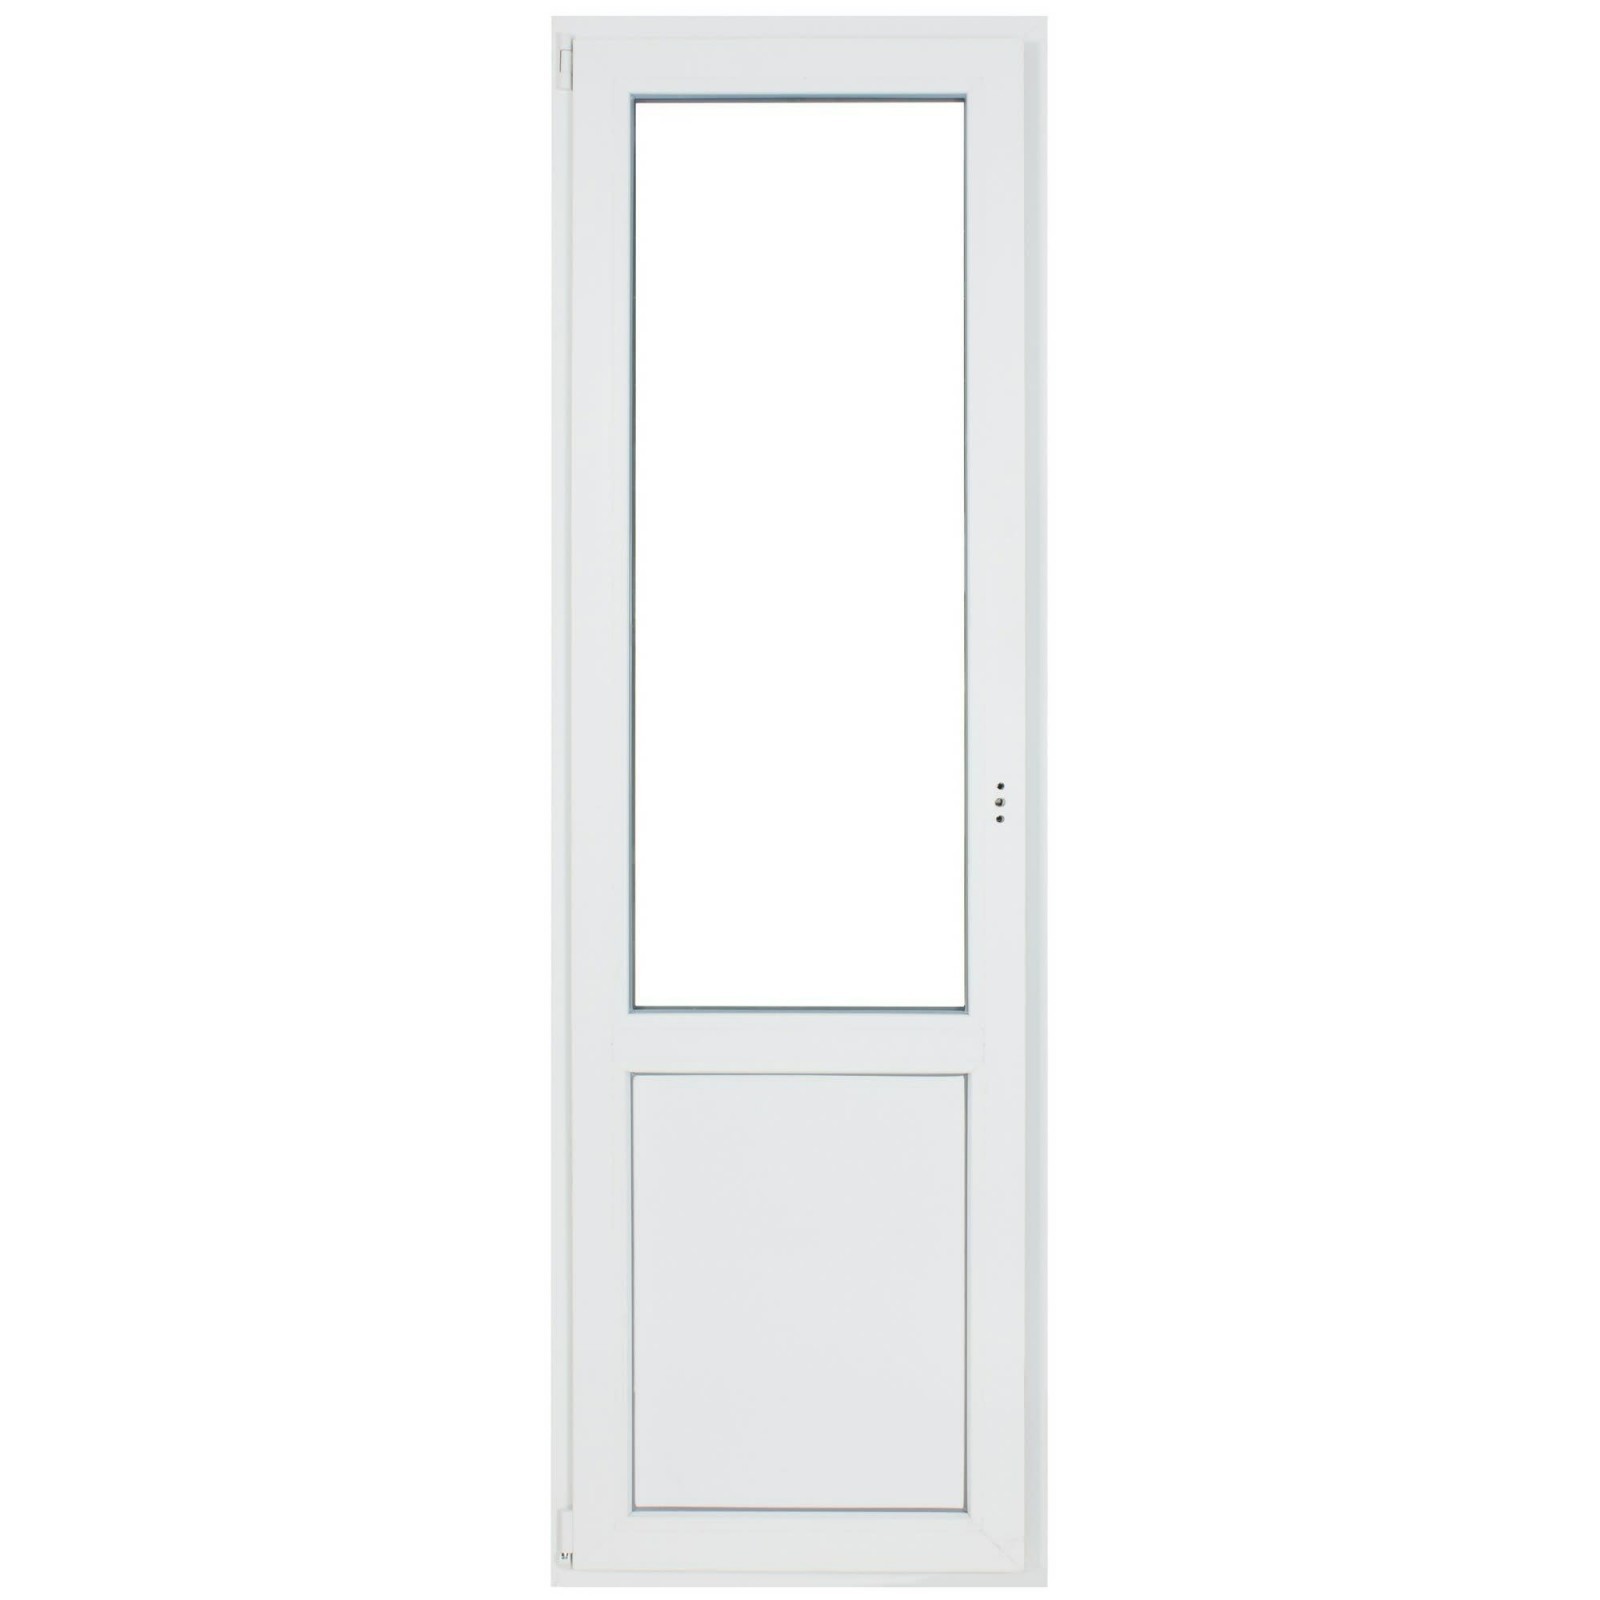 Дверь балконная ПВХ, 1-кам. правая 2100*750 мм - фото - 1